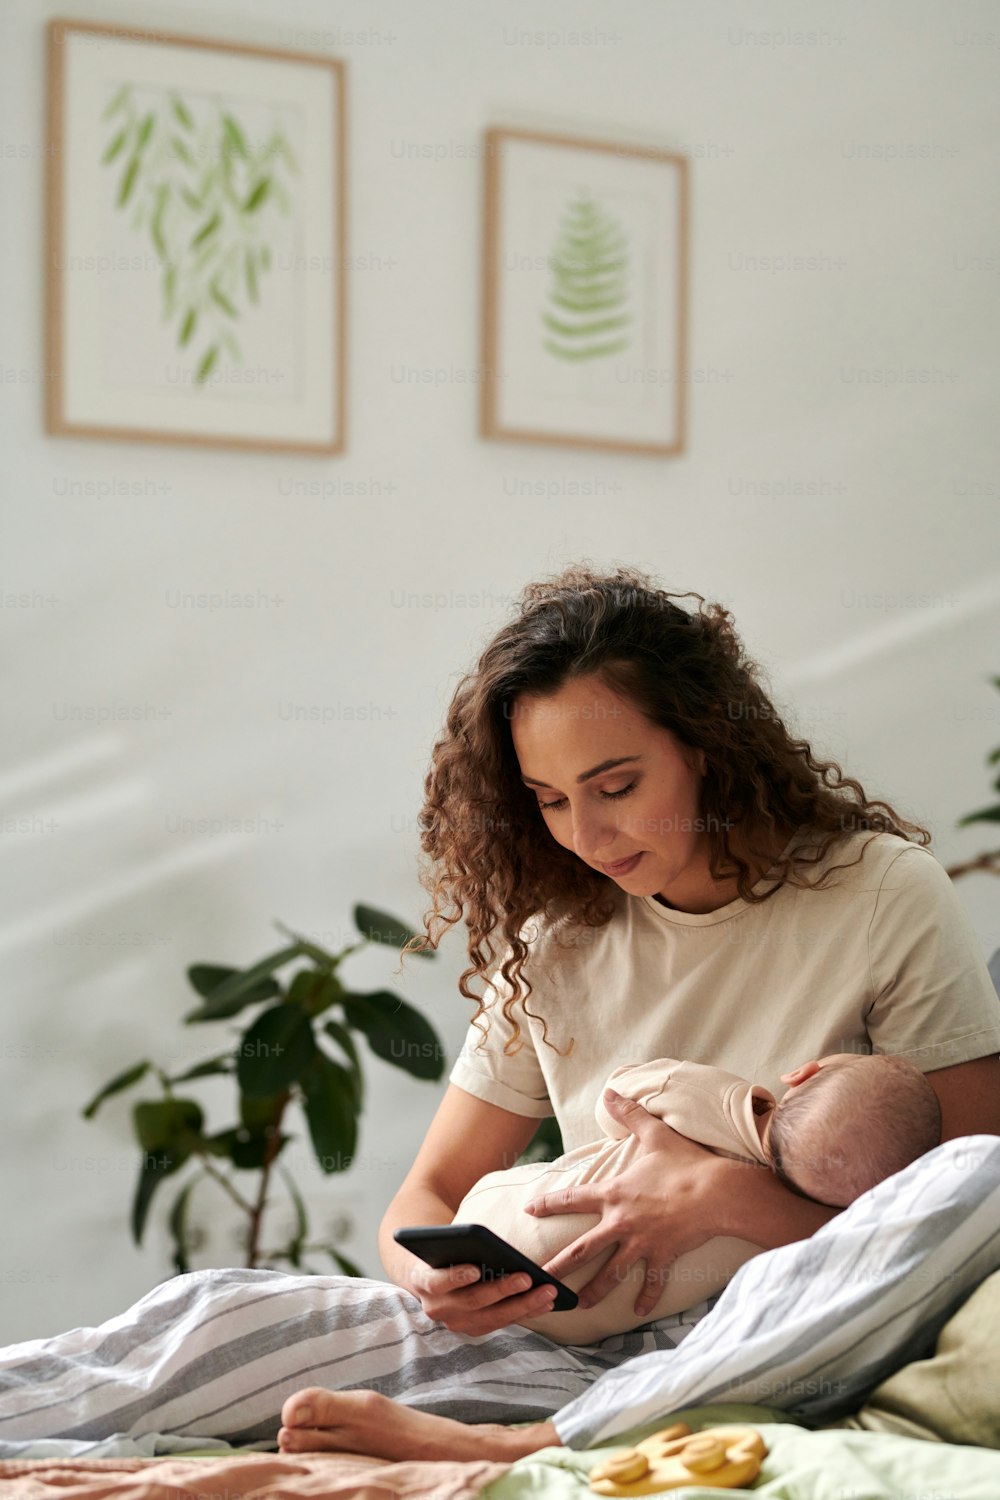 액자에 사진이 있는 벽에 편안한 더블 침대에 앉아 있는 동안 휴대 전화로 문자를 보내는 손에 아기를 둔 젊은 어머니